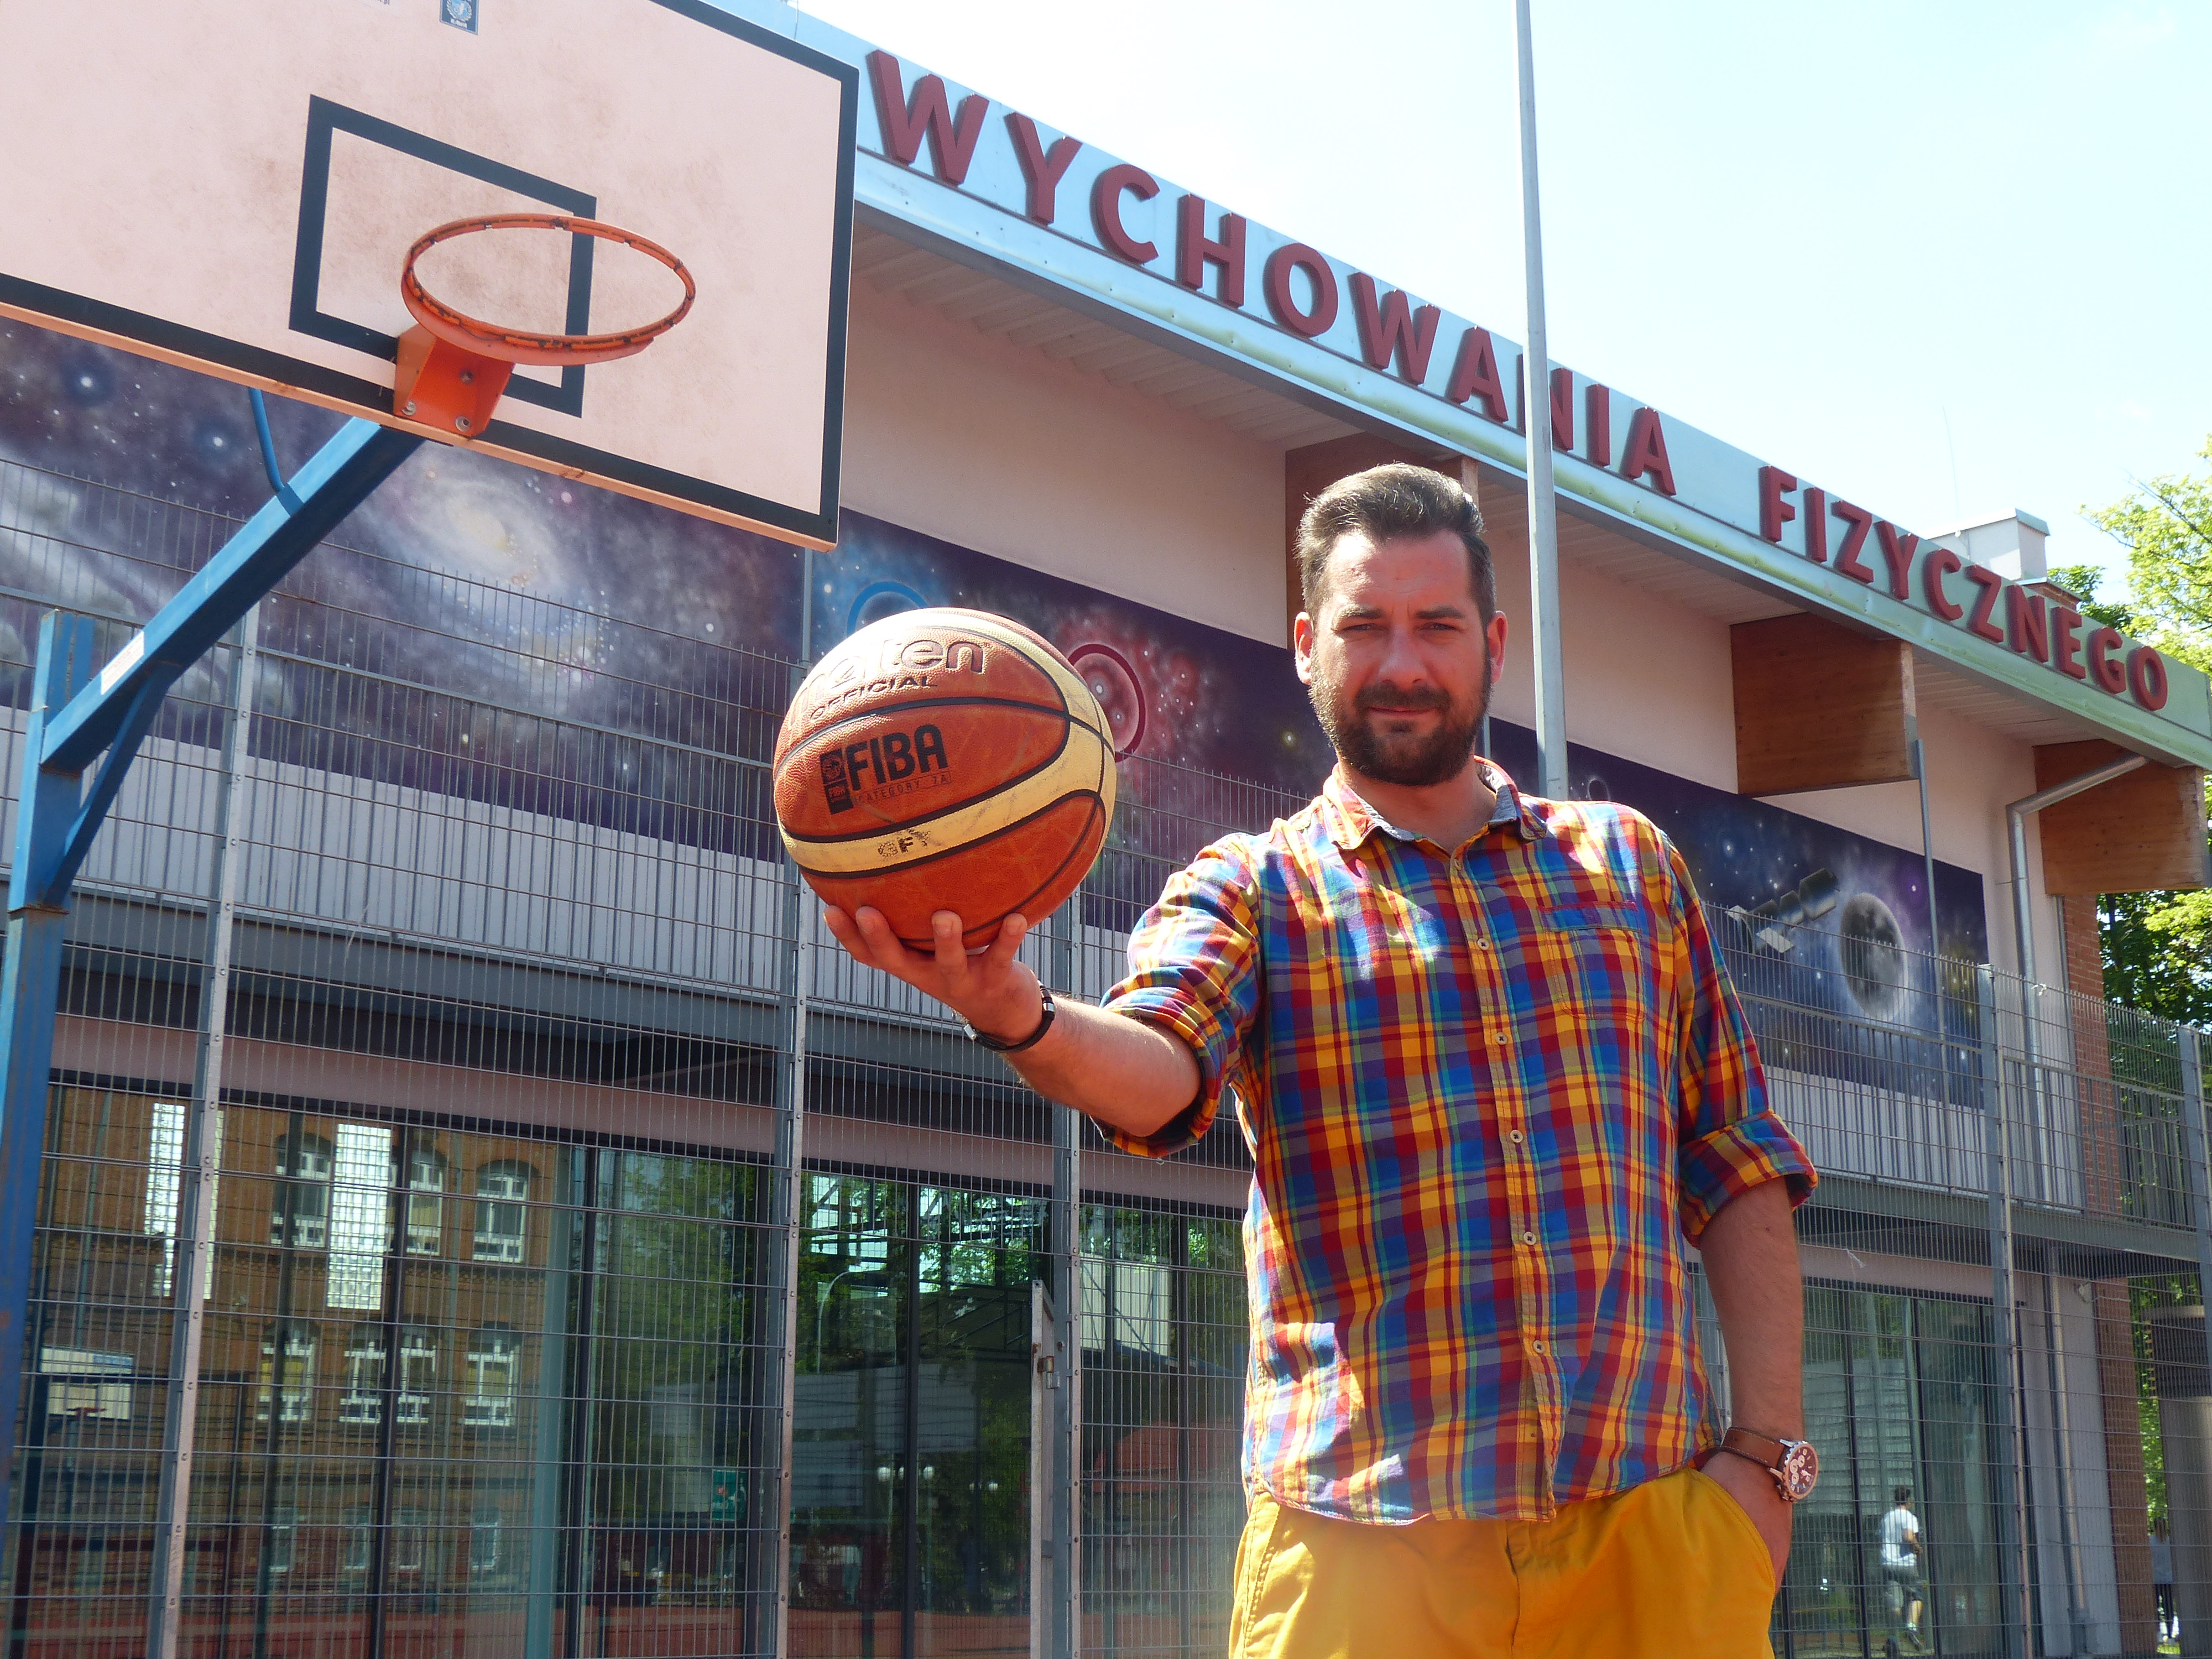 — W Broken Ball koszykówka ma być najważniejsza — mówi Tomasz Woźniak, który na tegoroczny turniej zaprasza do gimnazjum nr 1 w Iławie